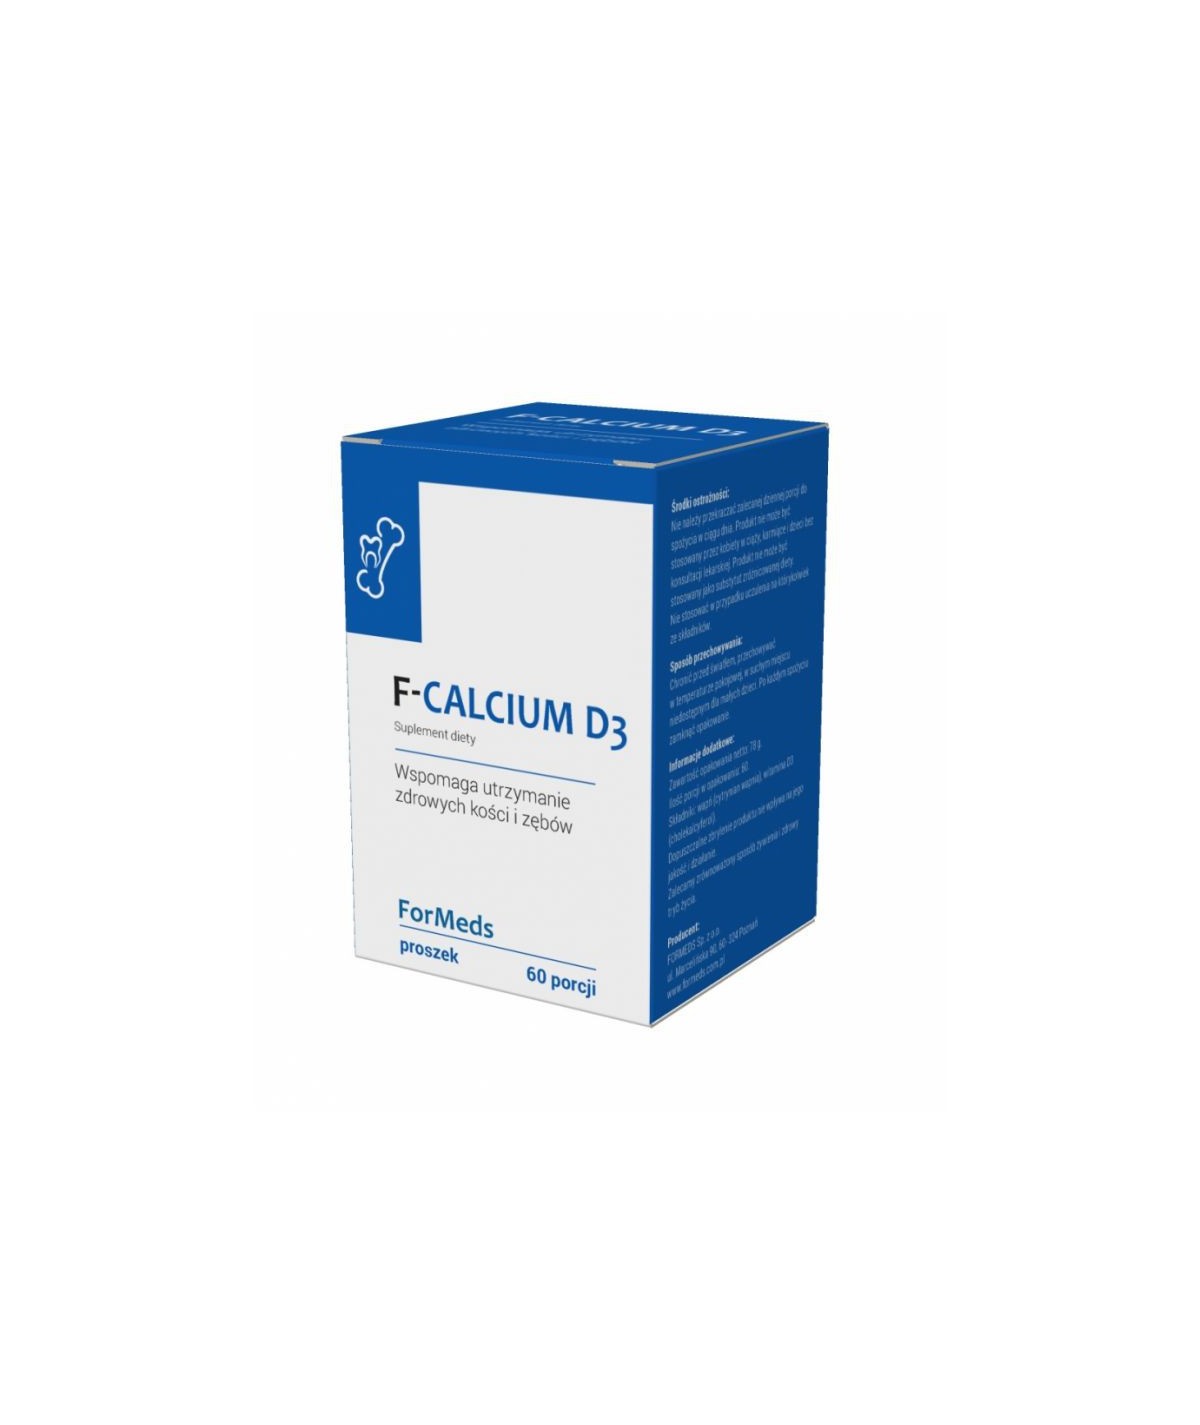 F-Calcium D3 -  wspomagają utrzymanie zdrowych kości i zębów - 60 porcji